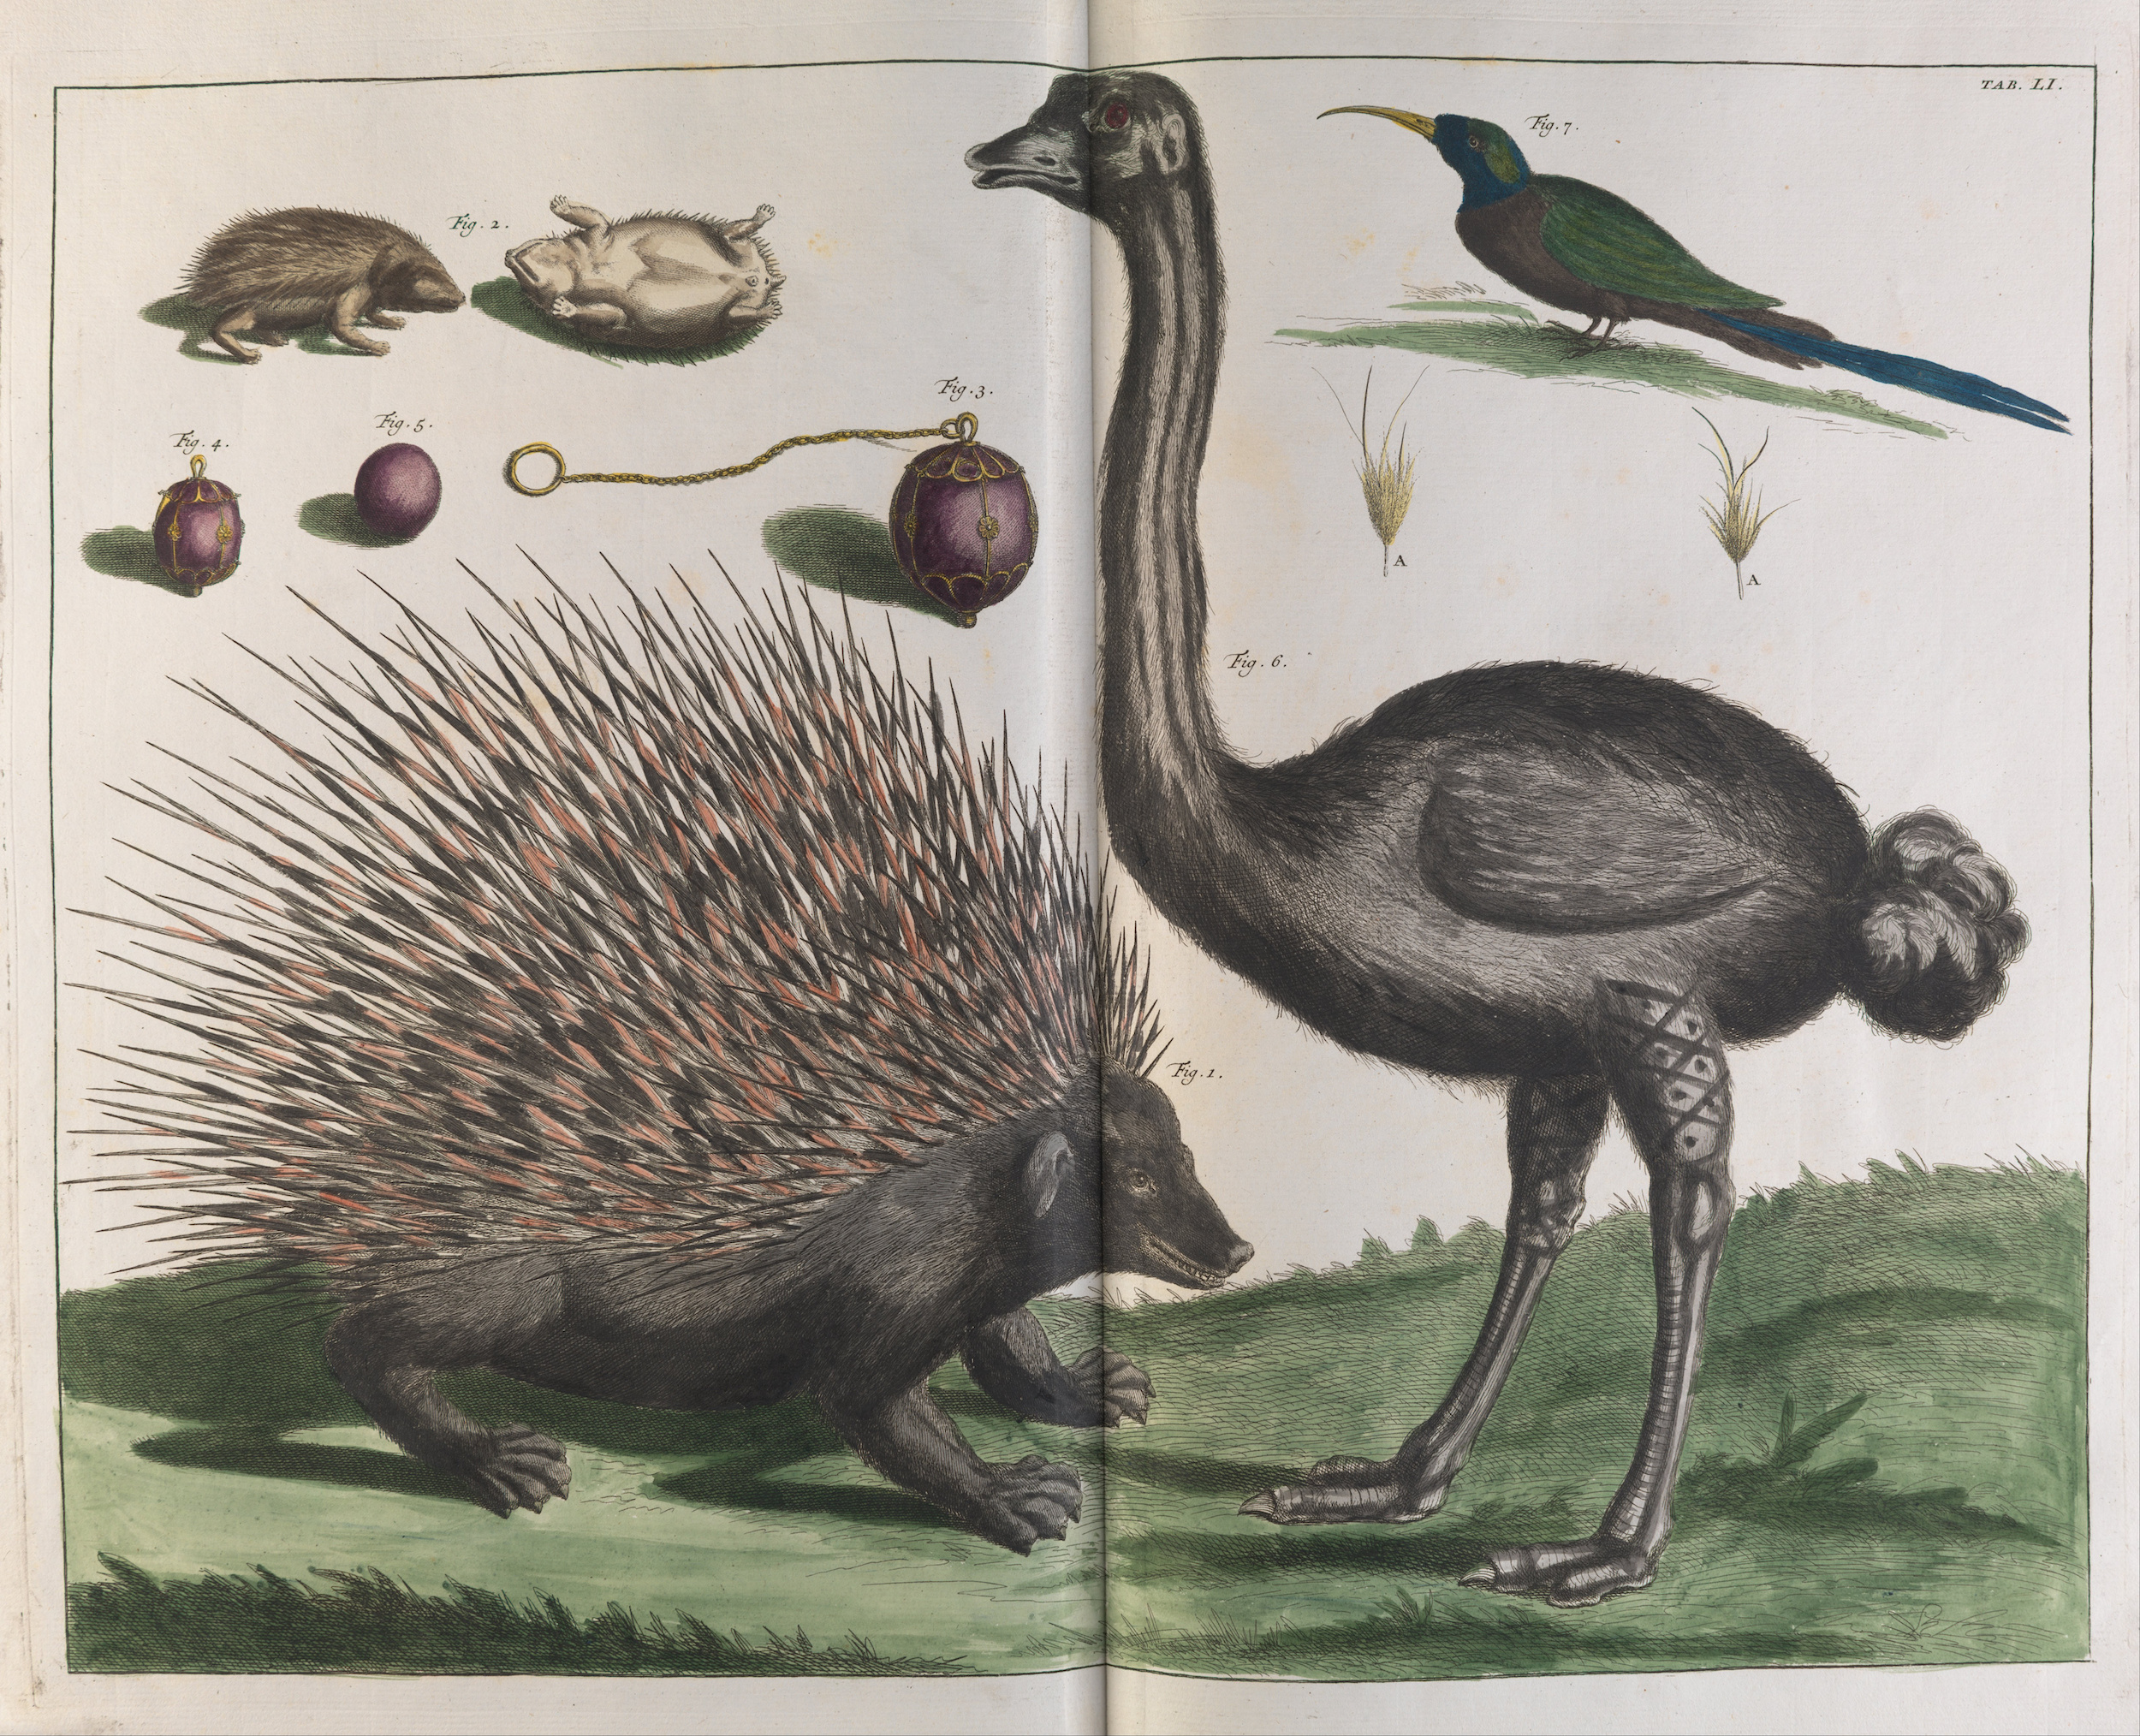 馬六甲刺猬、馬來亞刺猬和鴕鳥 by Albertus Seba - 1734 - 670 x 530 mm 